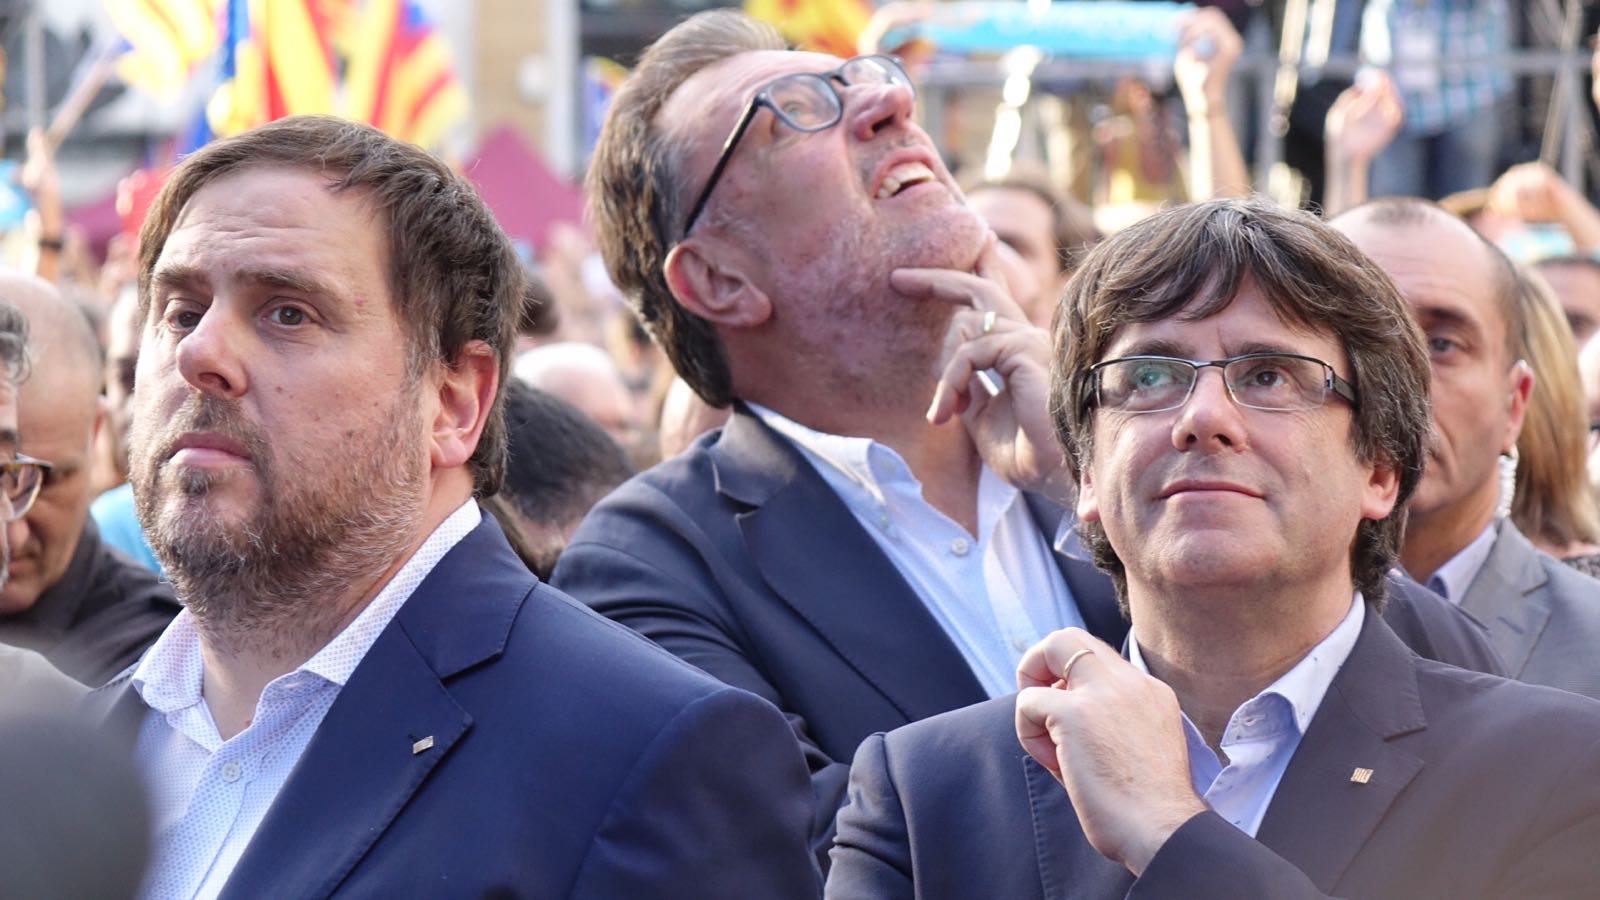 El conflicto catalán puede iniciar la renovación de Europa, según 'The Guardian'